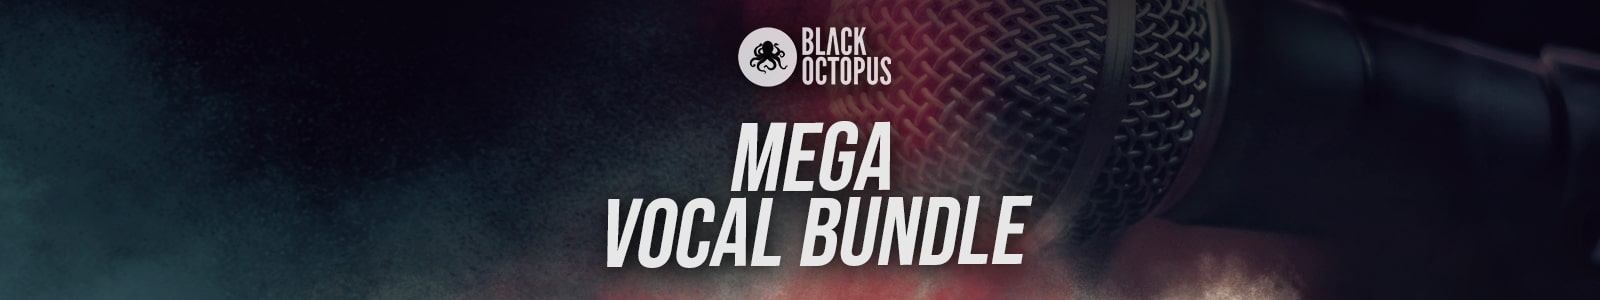 Mega Vocal Bundle by Black Octopus